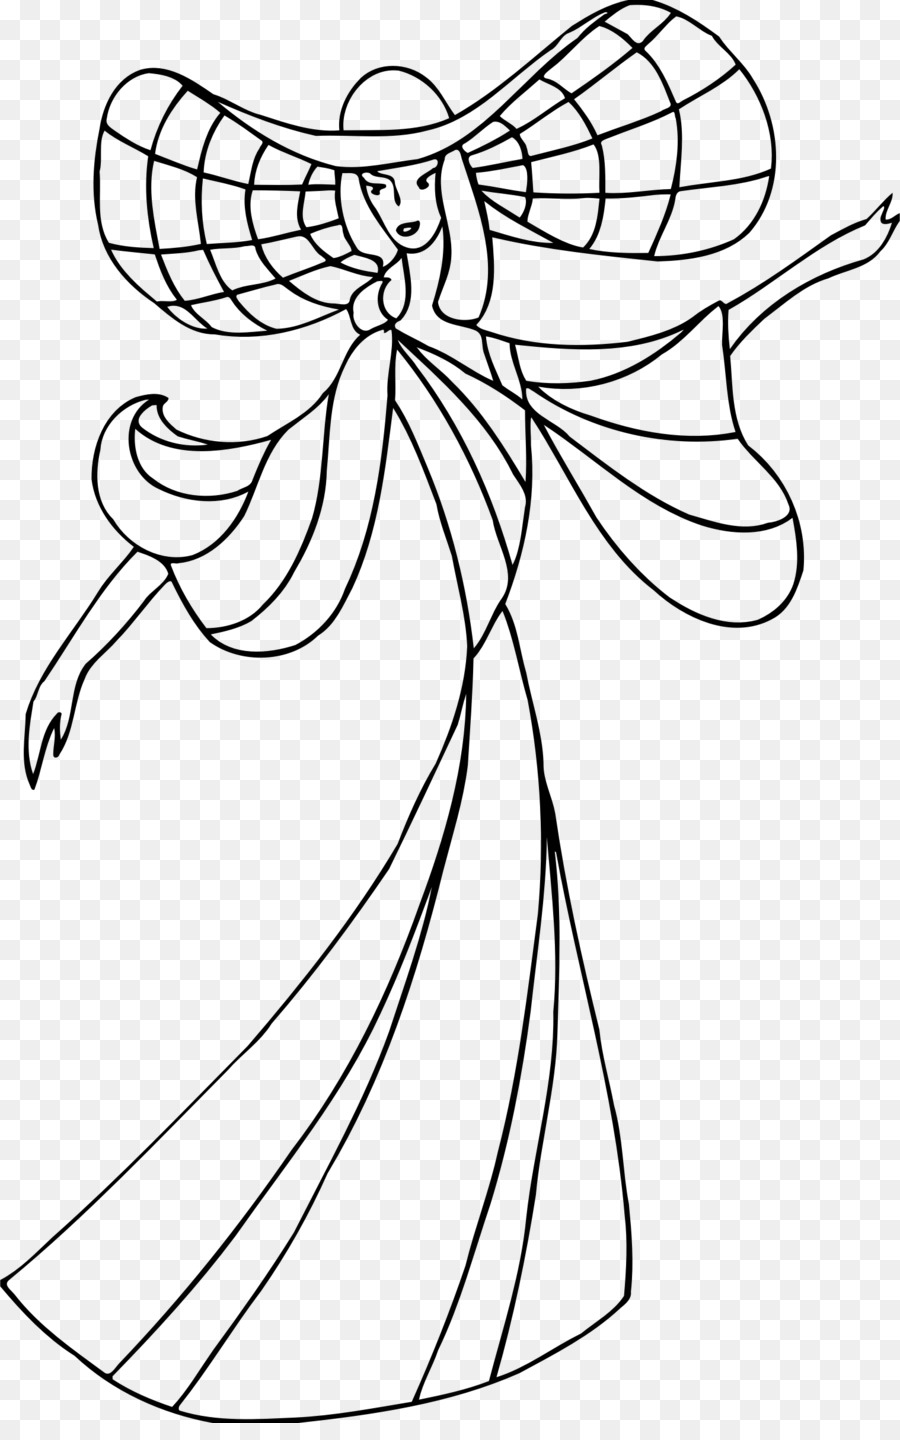 Line art Dance Drawing Floral design - others png download - 1518*2400 - Free Transparent Line Art png Download.